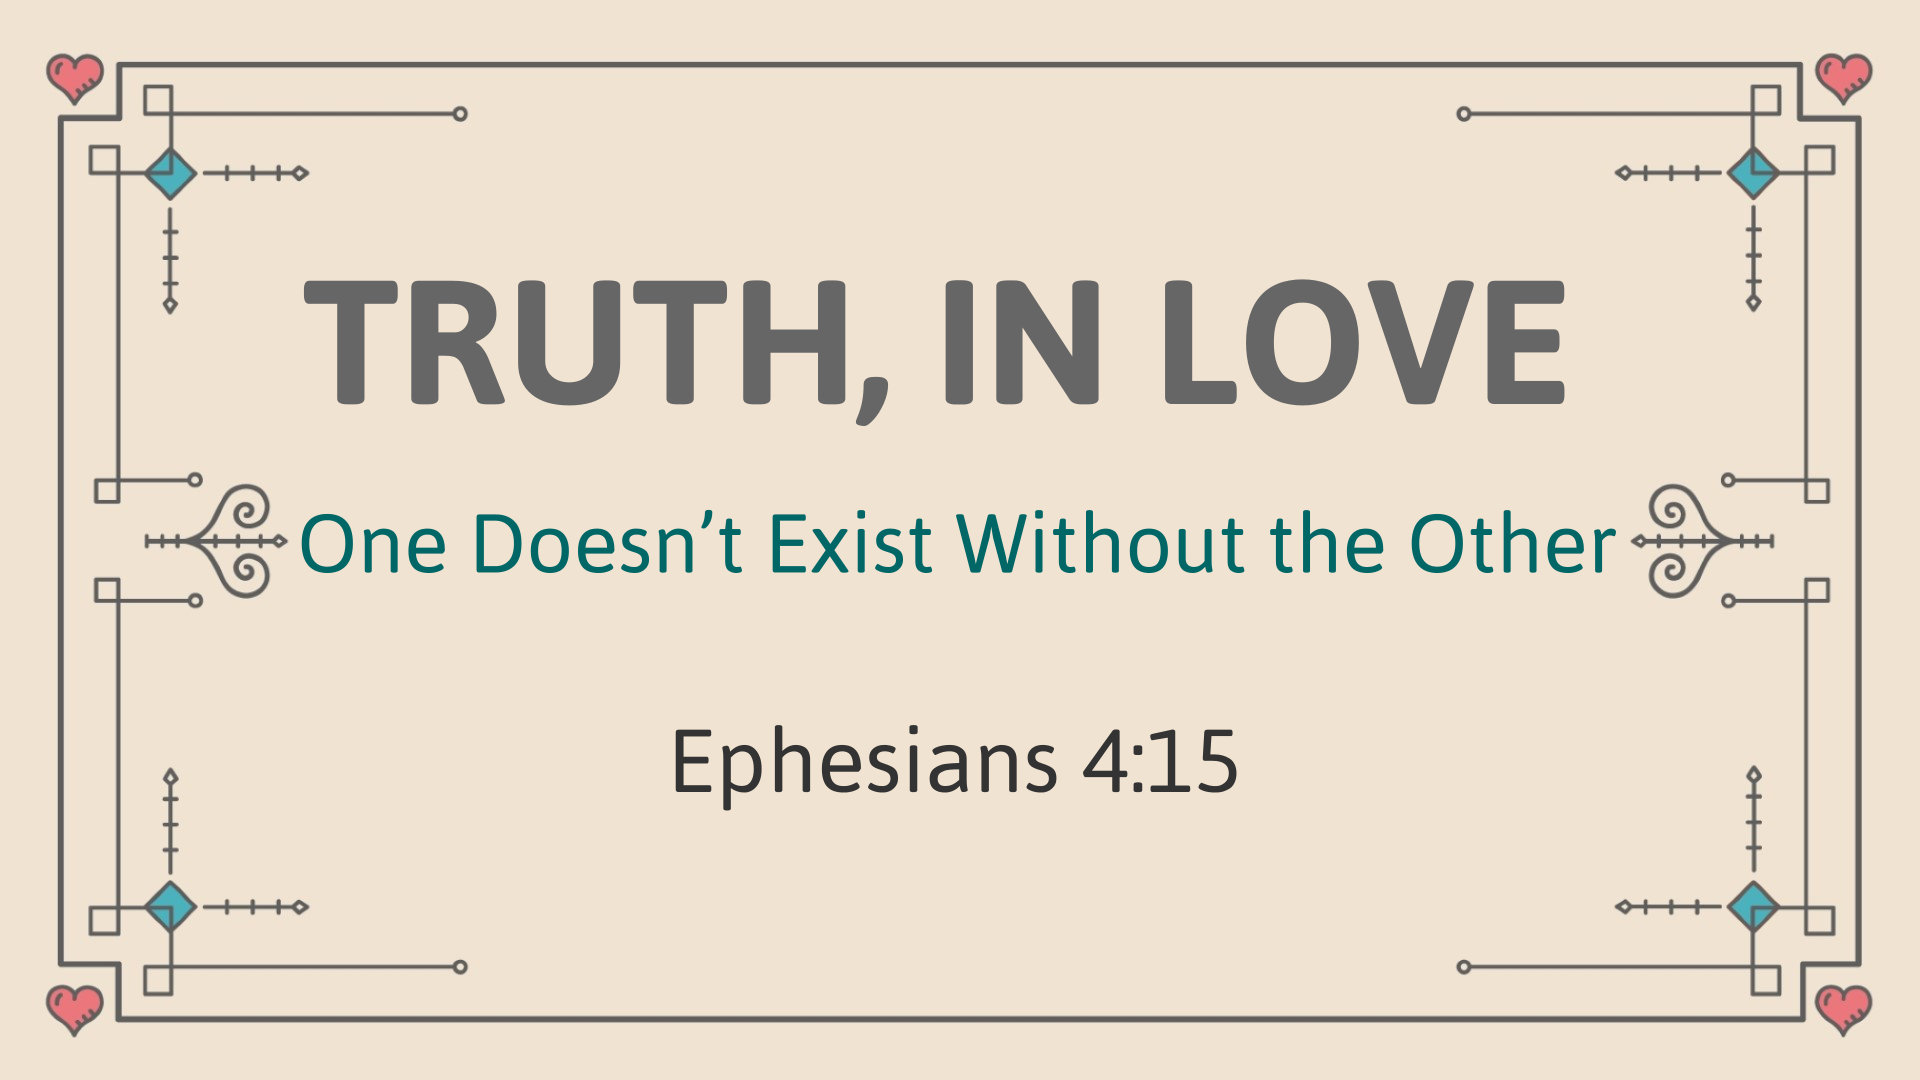 TRUTH, IN LOVE